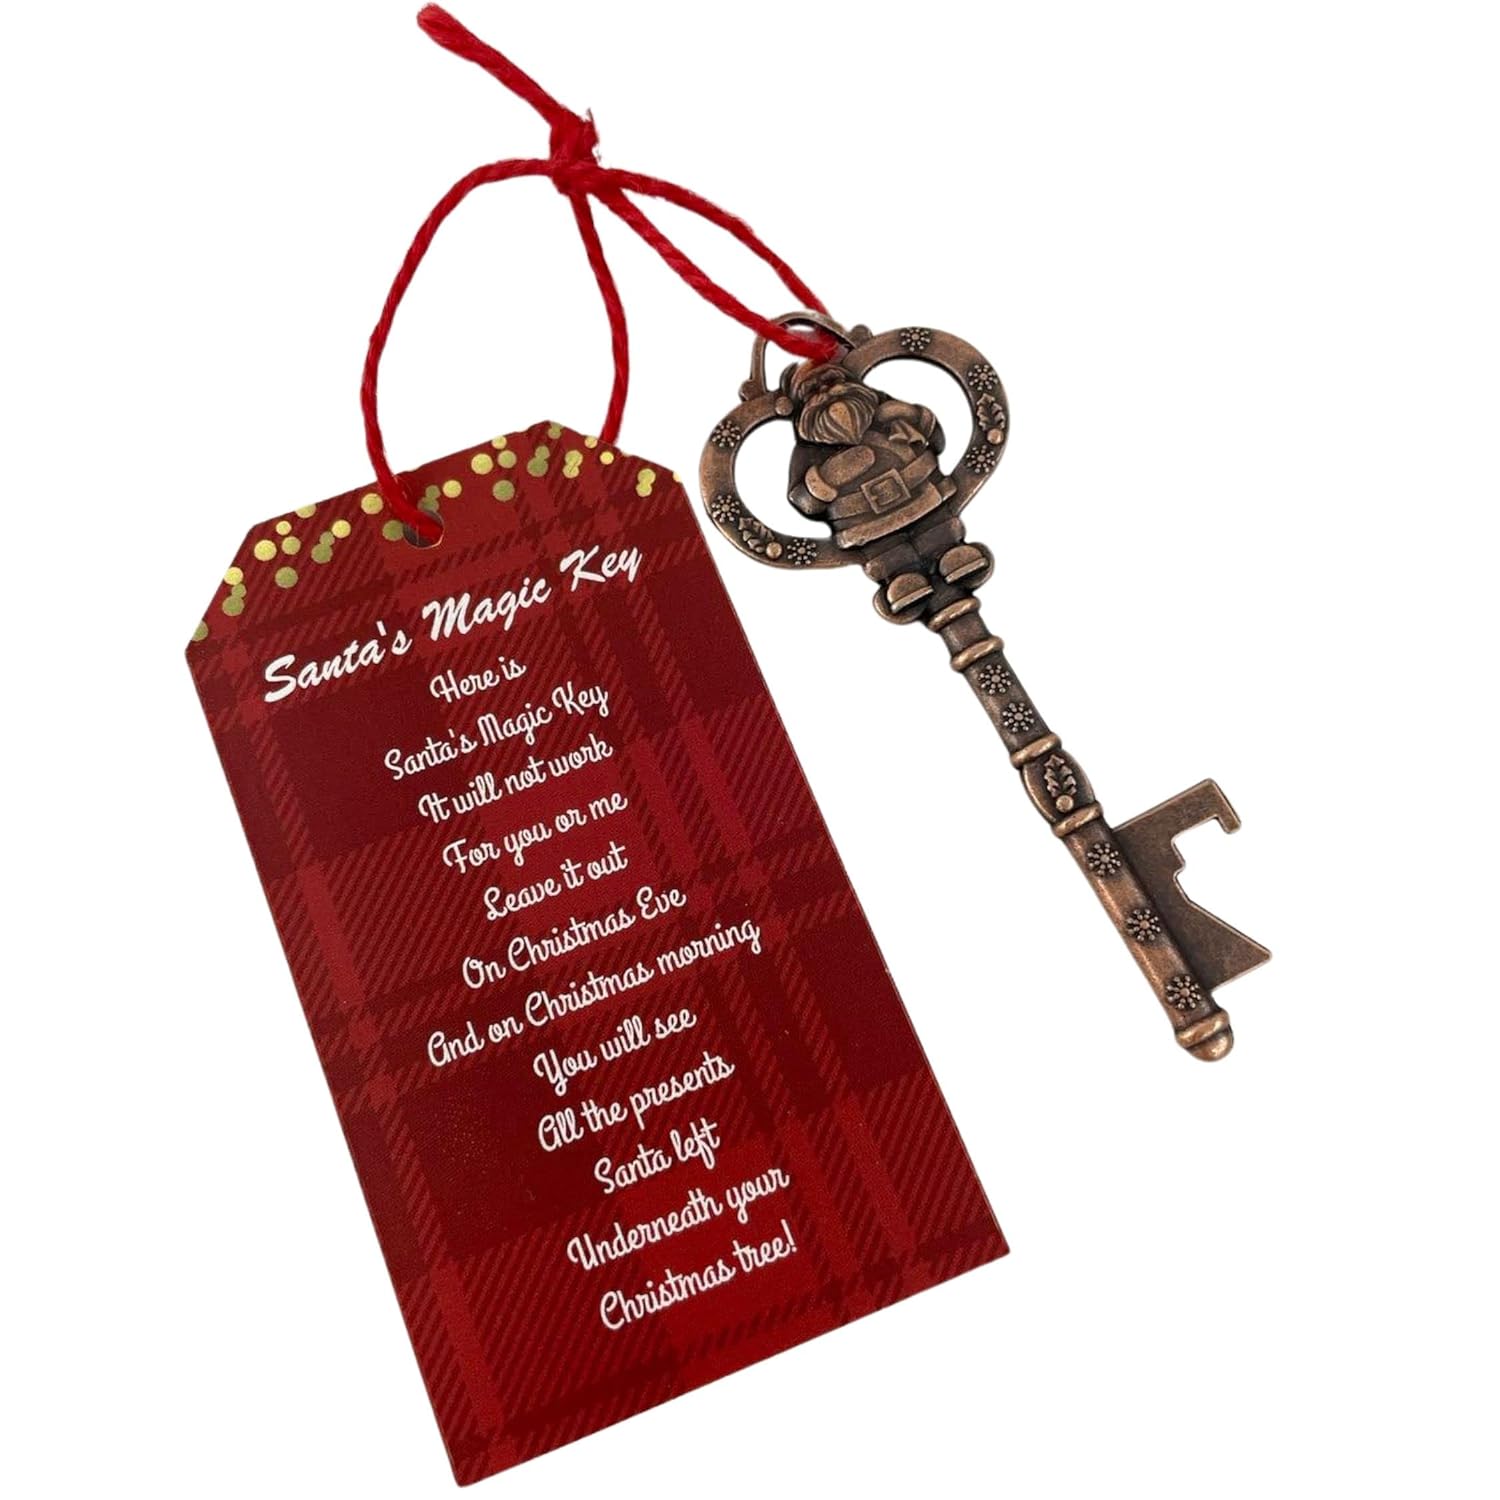 Santa’s Magic Key for House